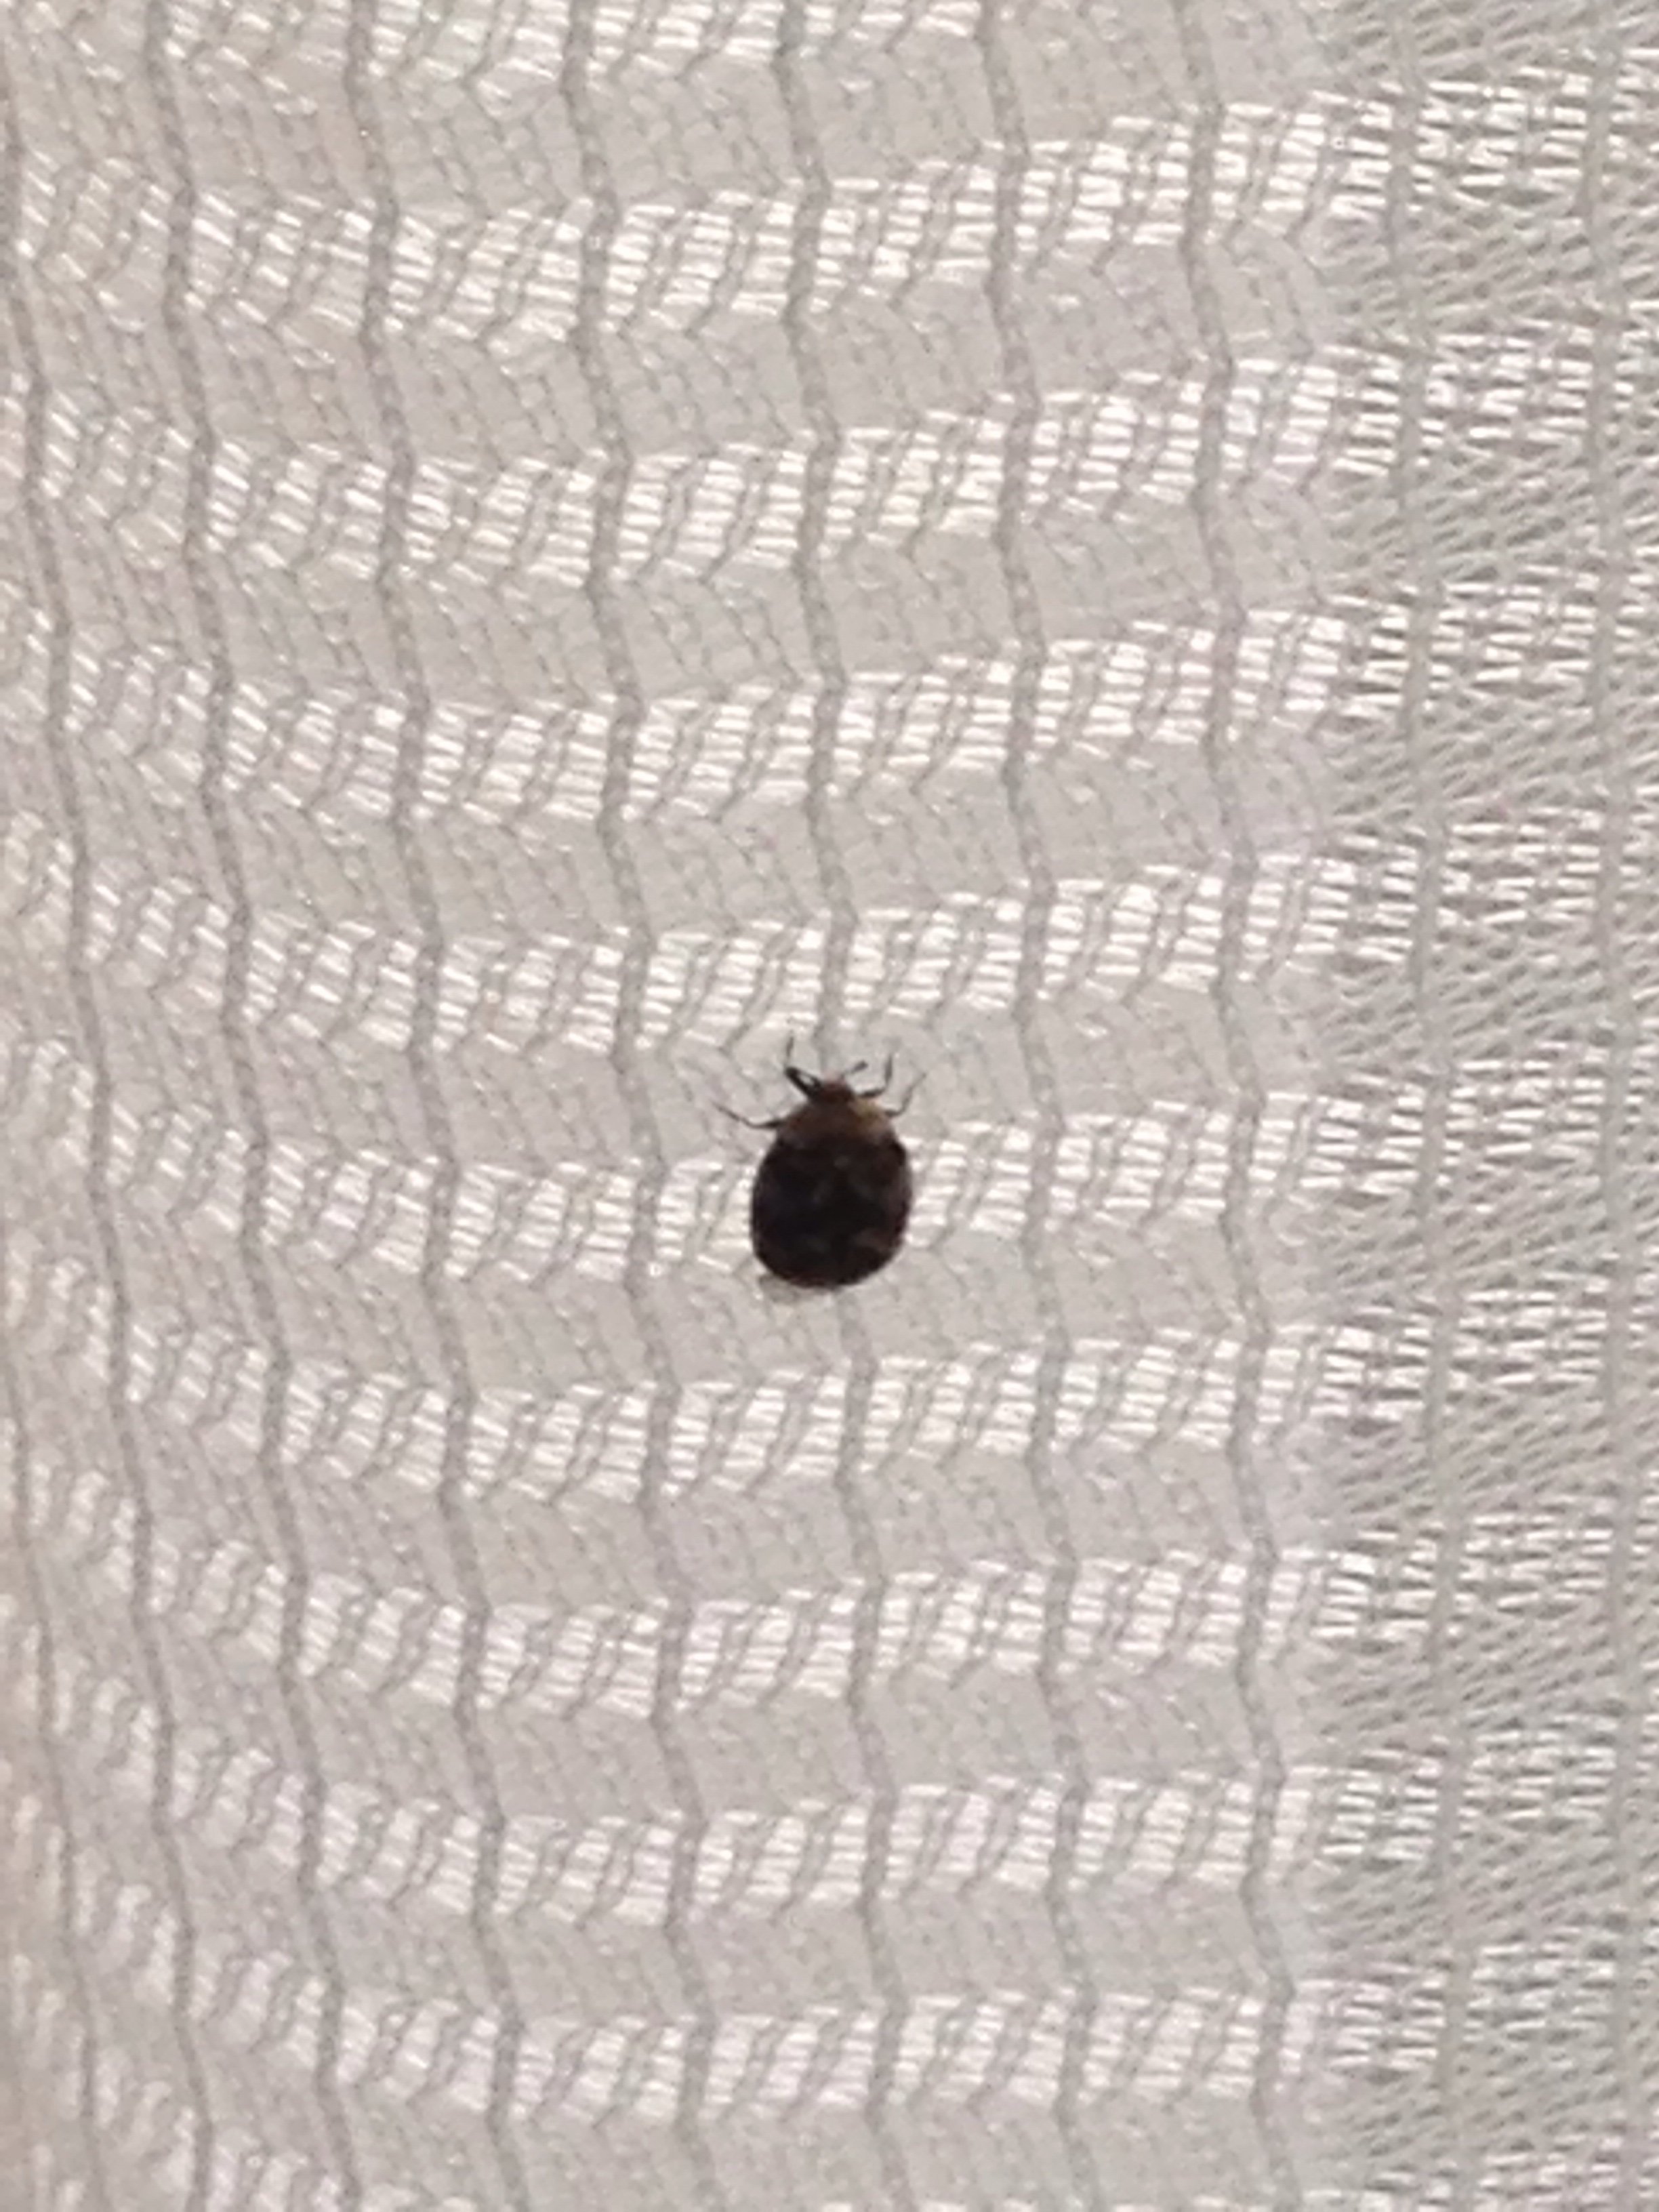 家の中に黒い小さい虫がたくさん発生していて困っております 動き Yahoo 知恵袋